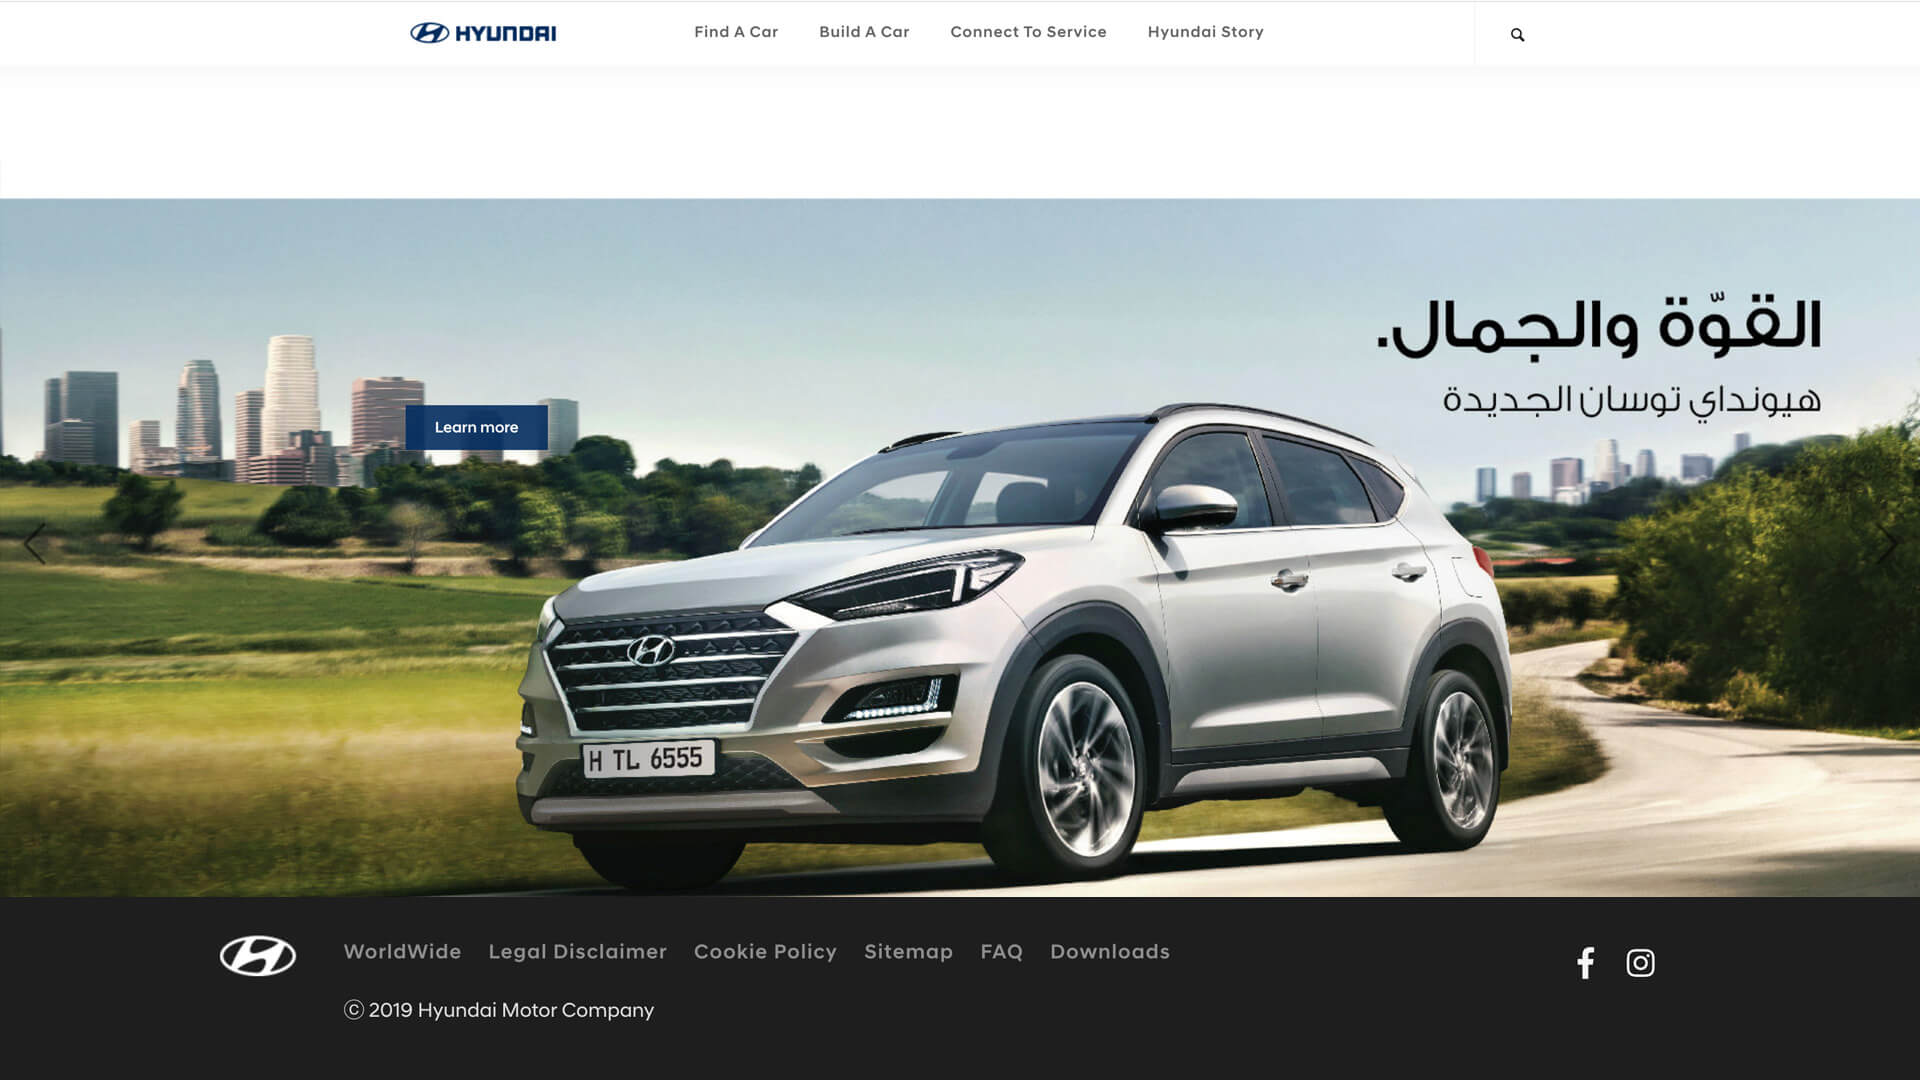 Hyundai GK website